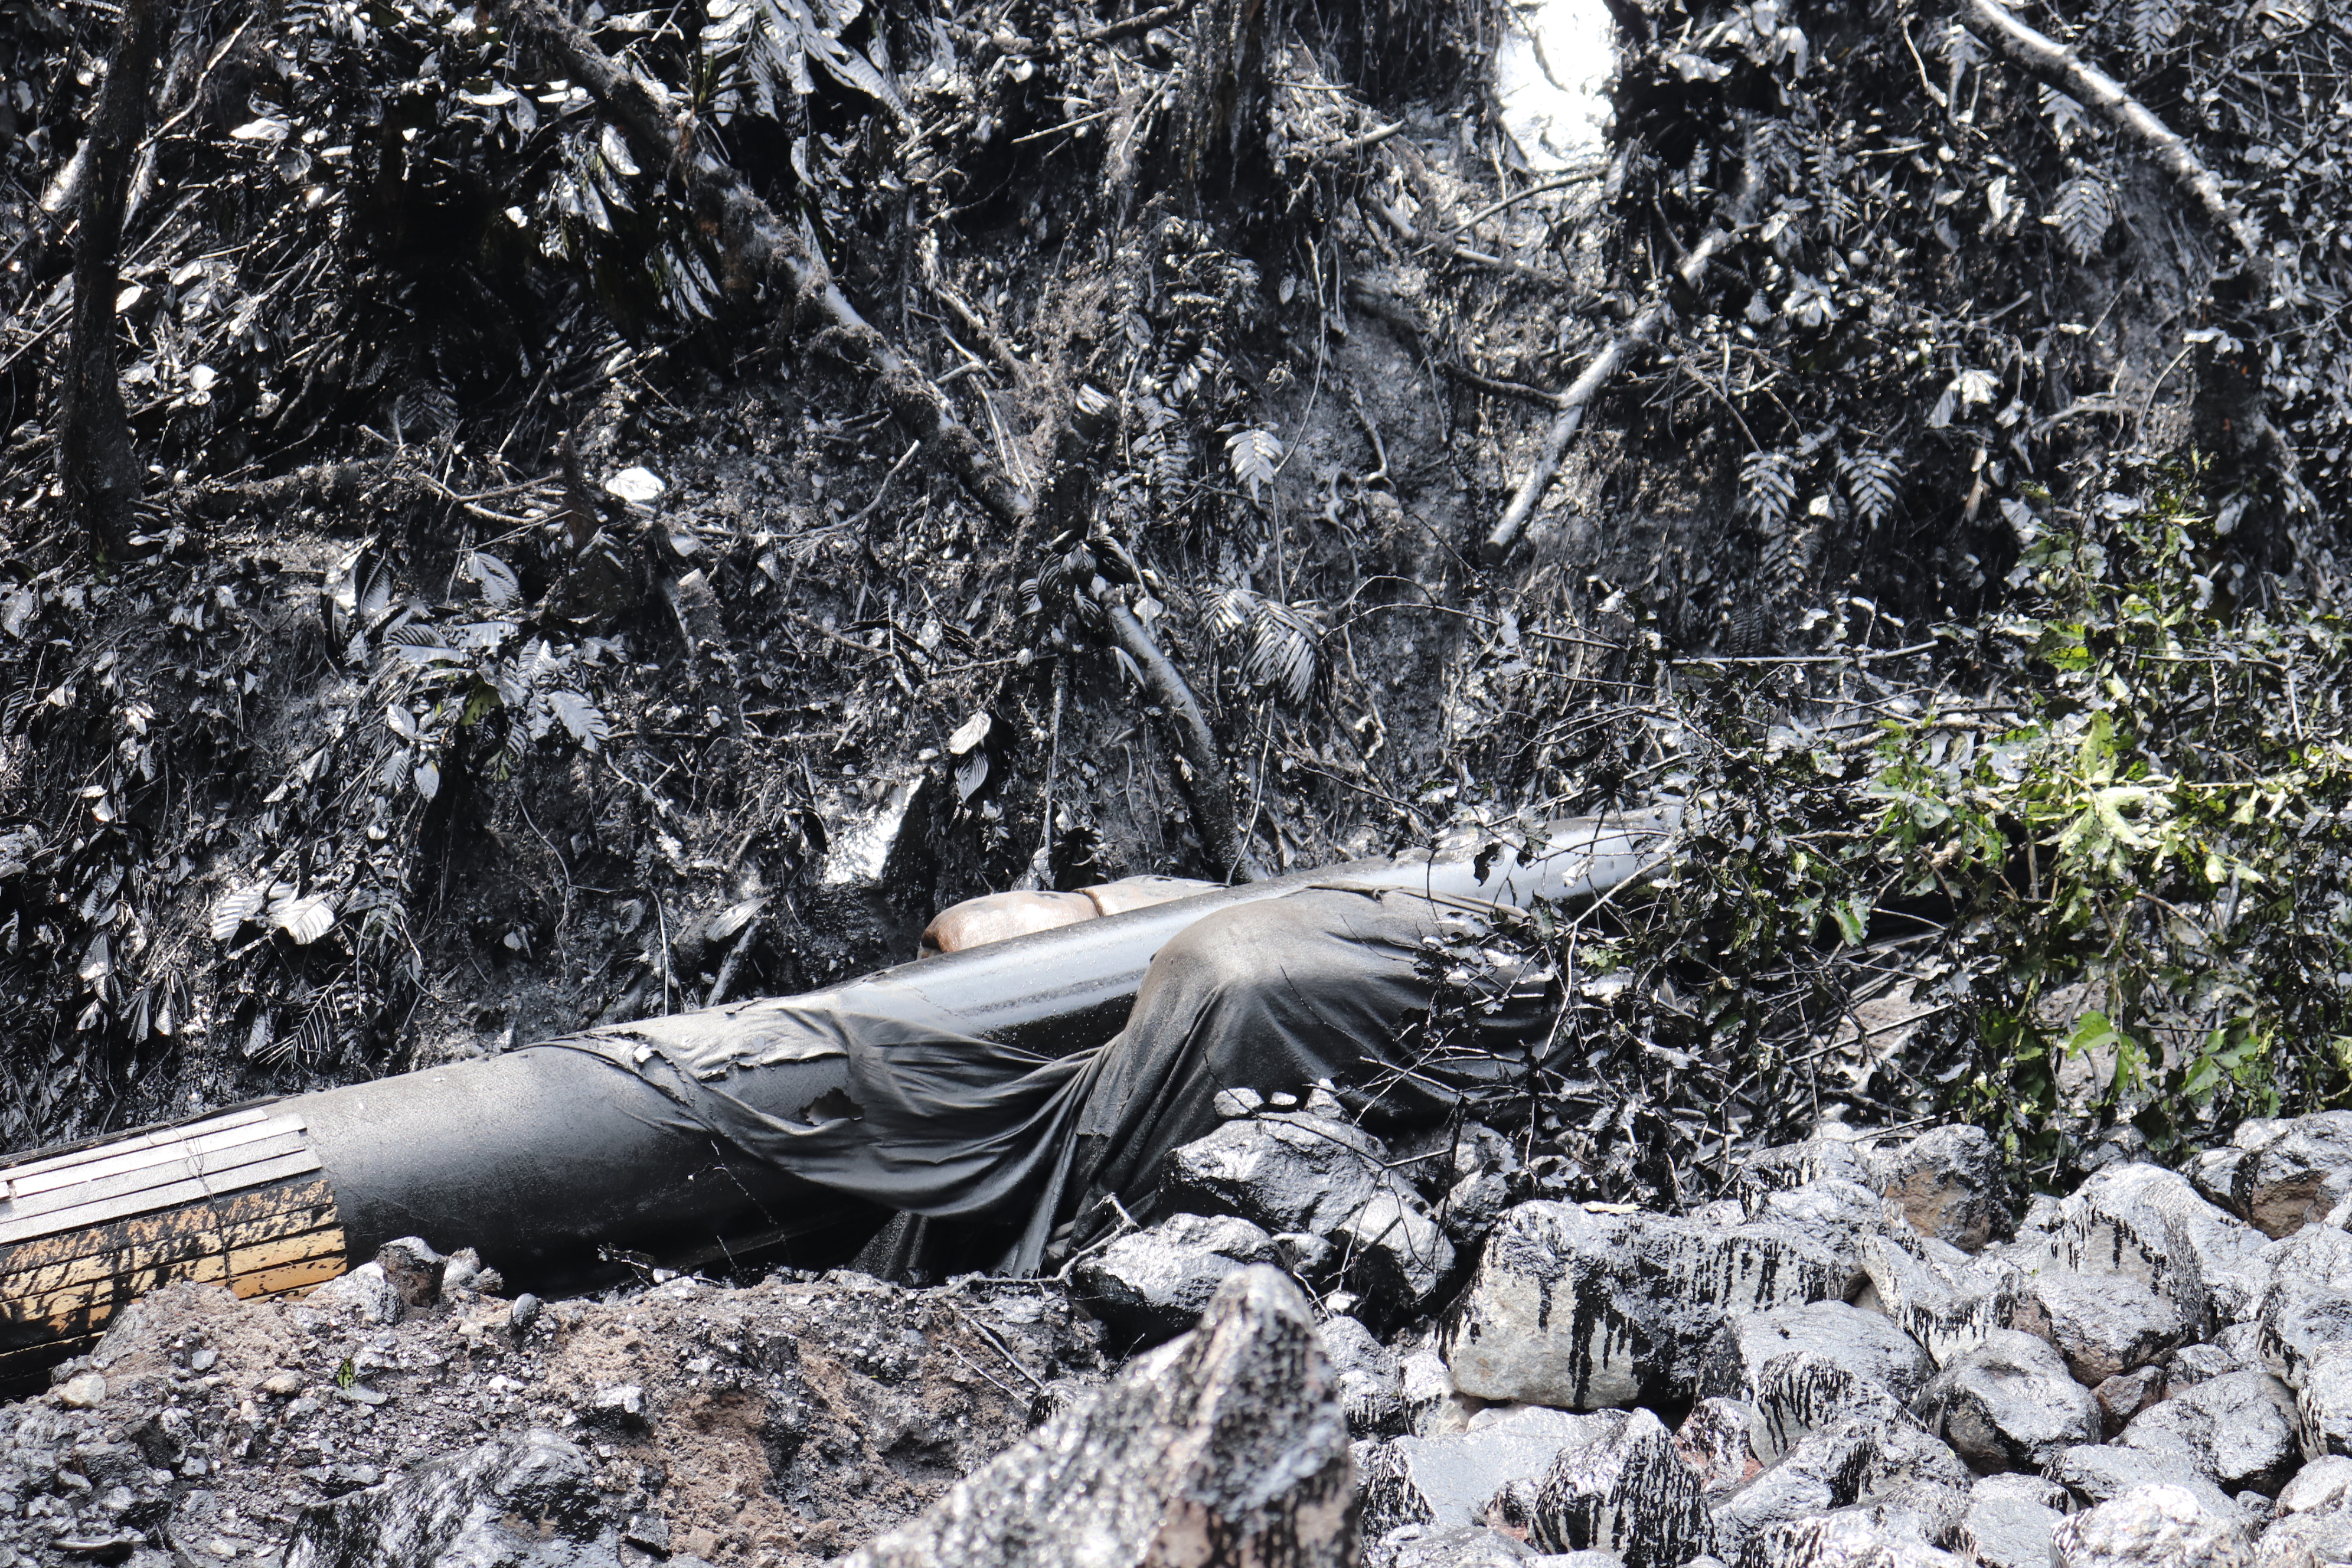 La rotura del Oleoducto de Crudos Pesados en la Amazonía ecuatoriana provocó el derrame de crudo que ha afectado a más de 21.000 m2 incluyendo la zona del Parque Nacional Cayambe Coco (Foto: Ministerio de Ambiente)